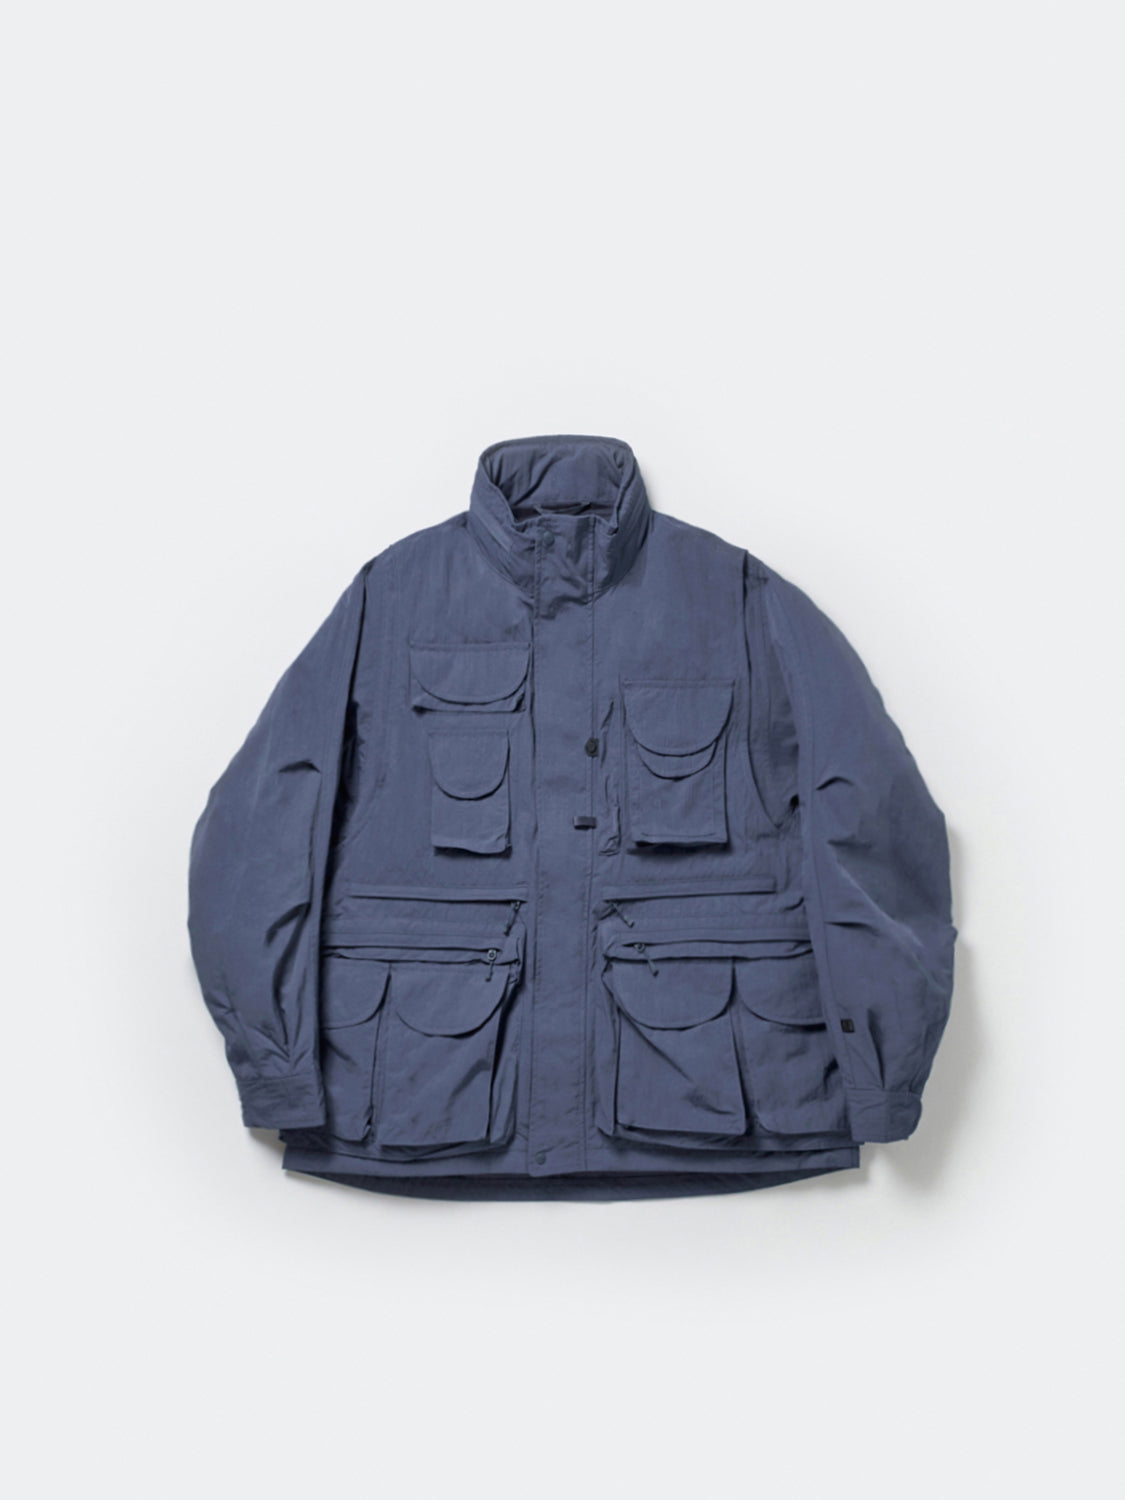 カラーはネイビーですDP39 22AW tech perfect fishing jacket